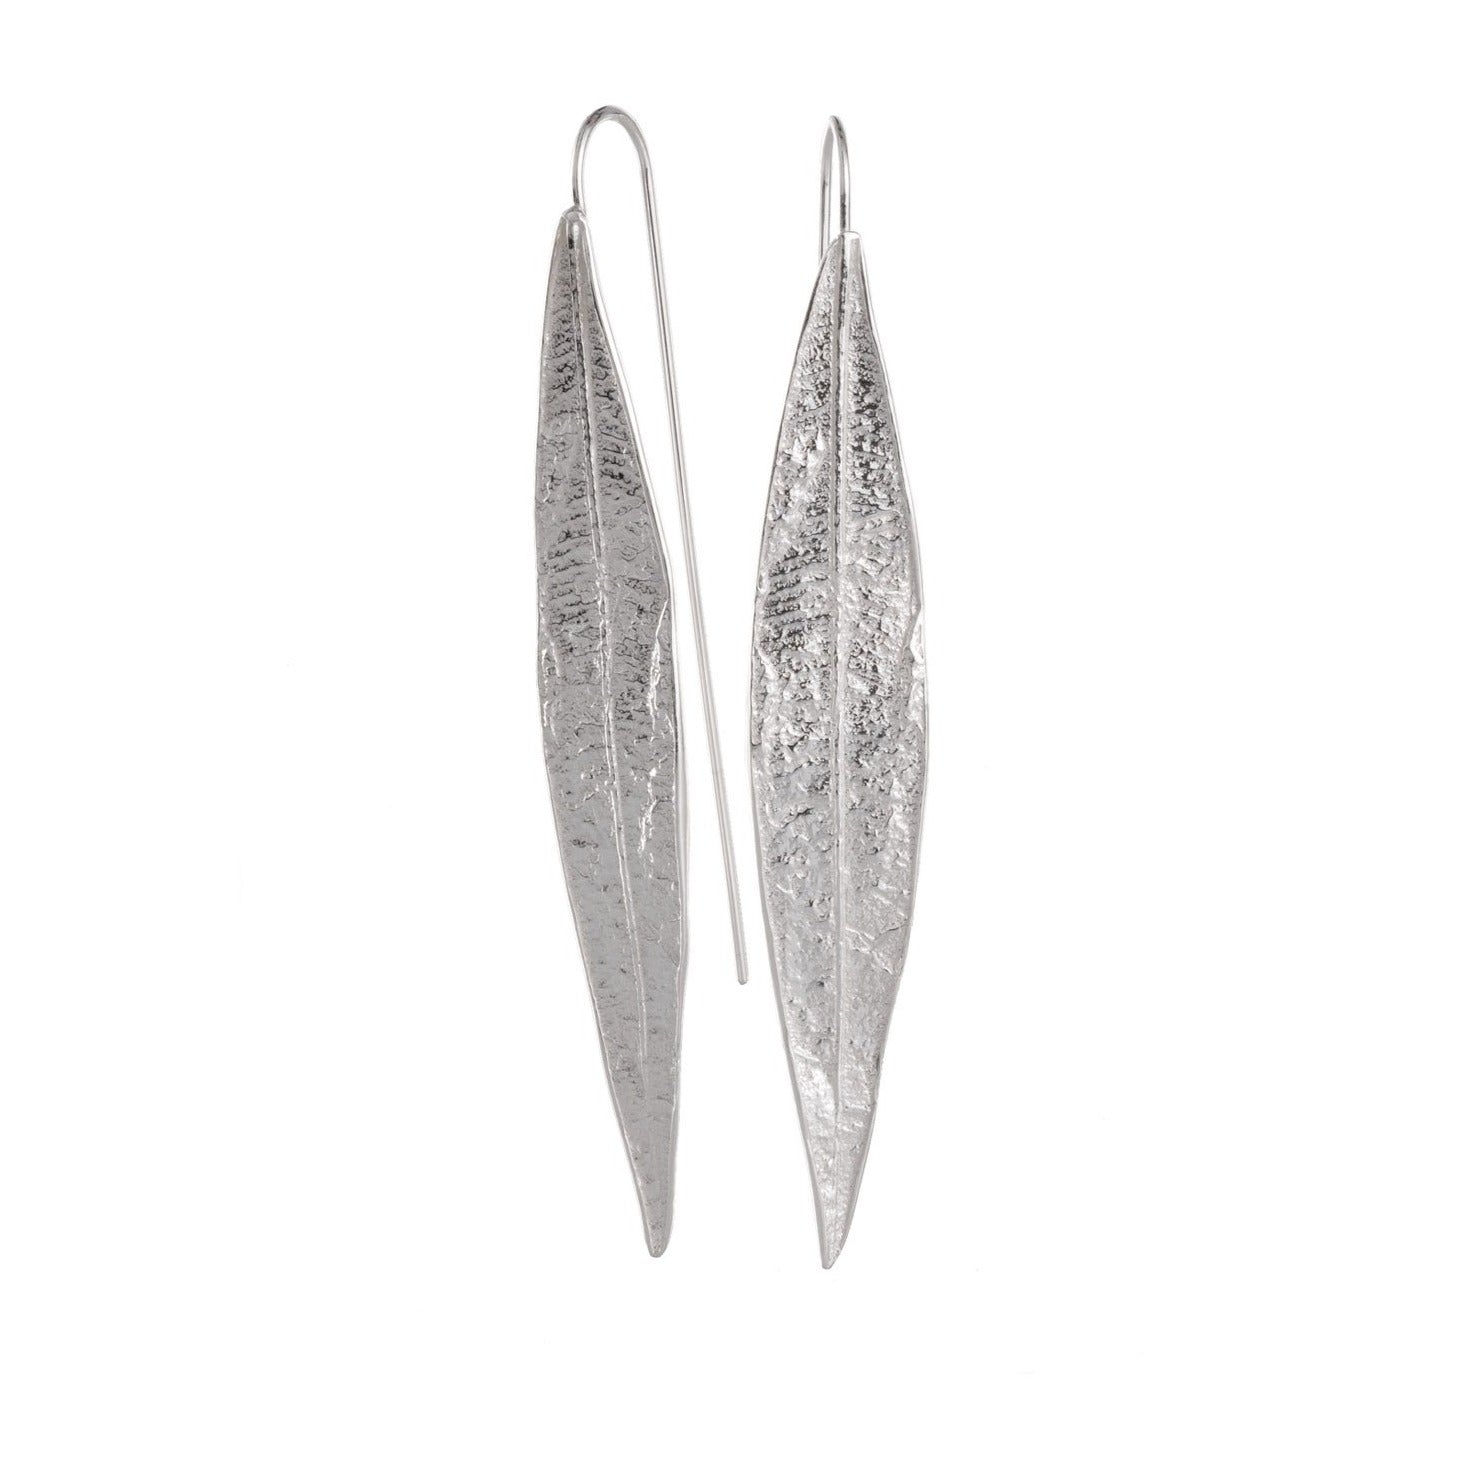 Airy Heights Design oleander leaf earrings